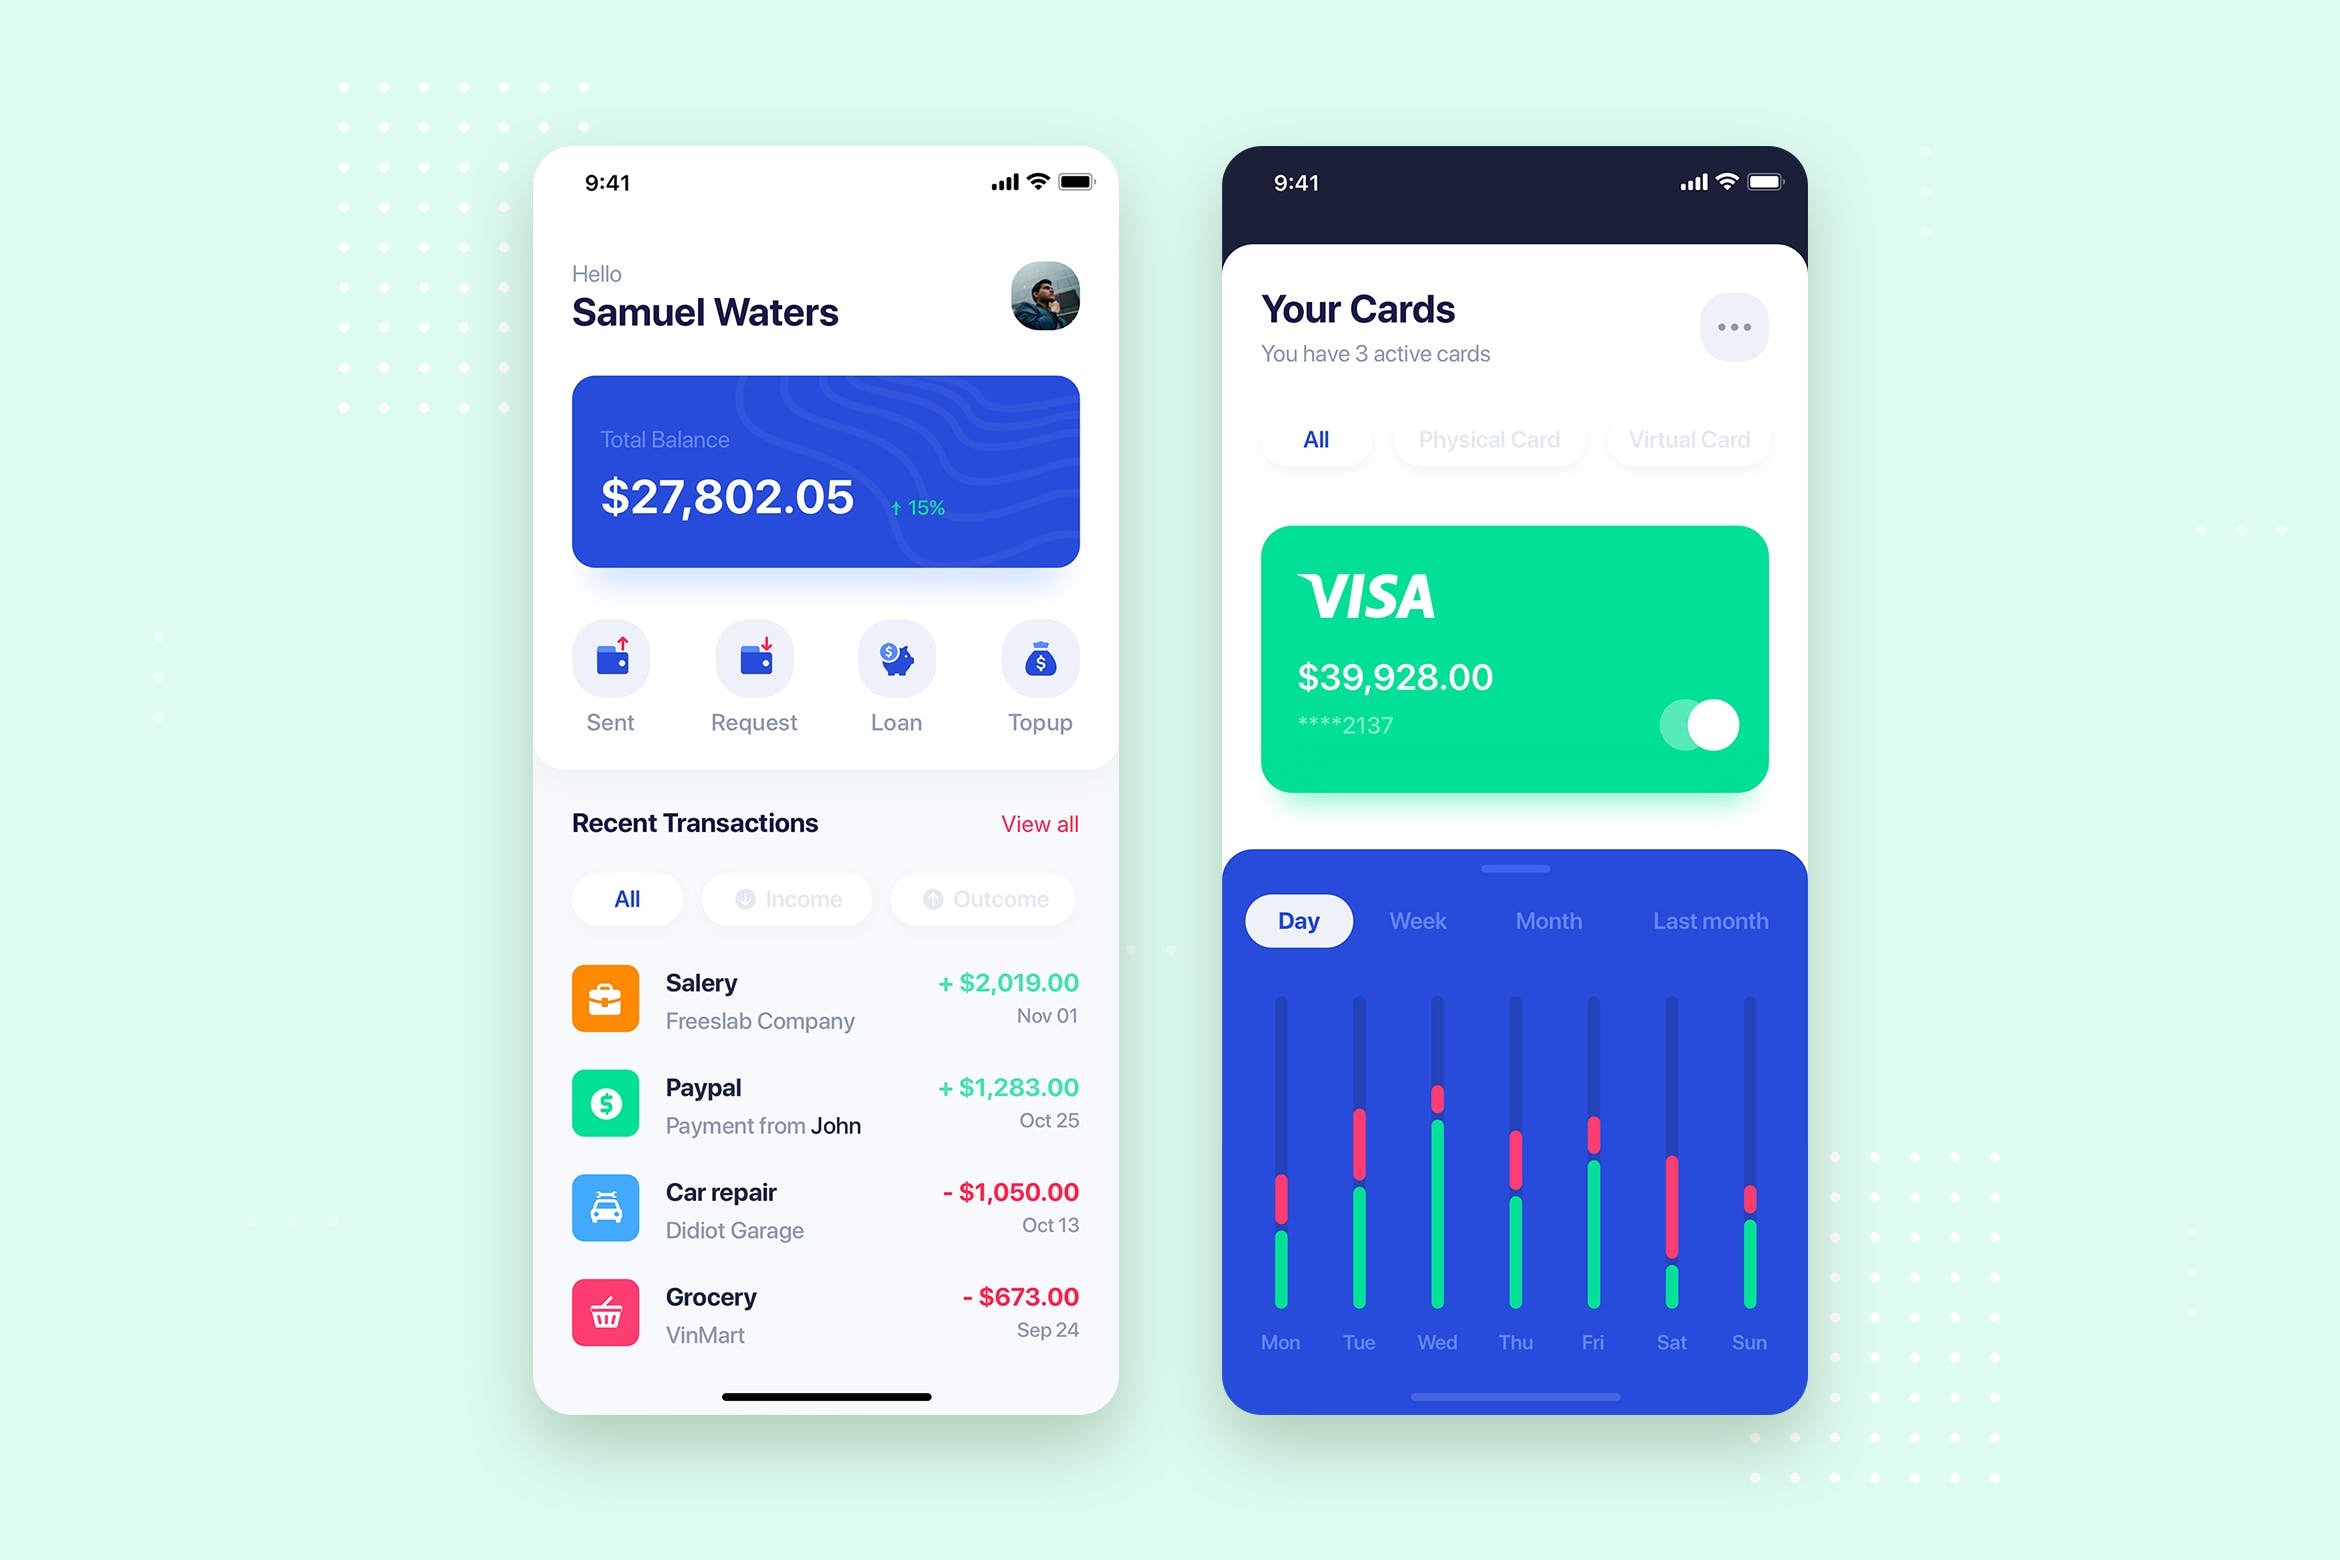 电子银行APP应用主页&银行卡管理界面UI设计第一素材精选模板 Banking Wallet Mobile App UI Kit Template插图